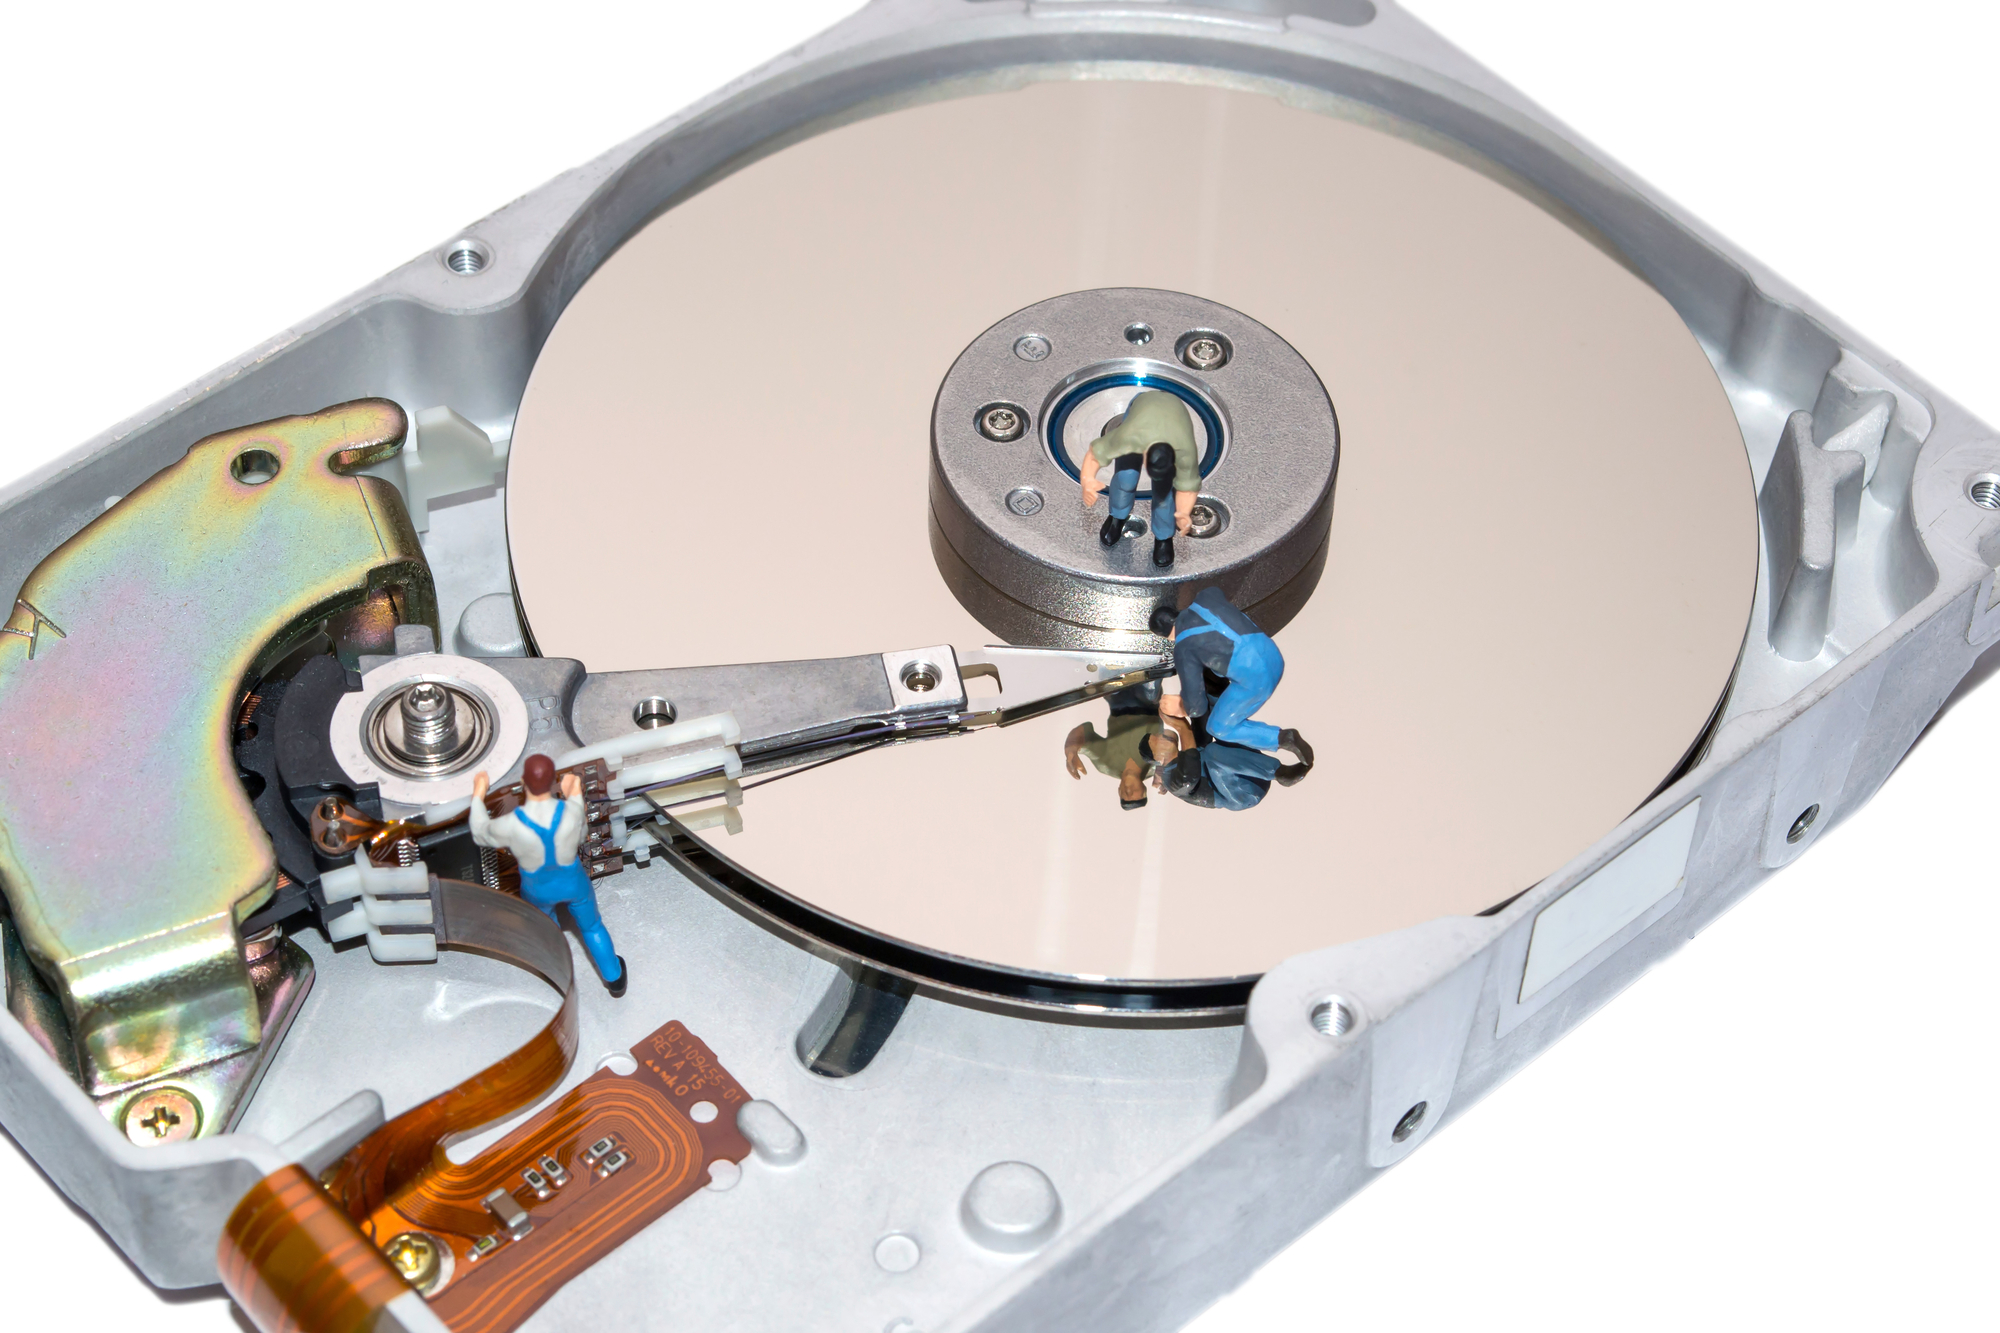 Odzyskiwanie danych z z uszkodzonego dysku SSD tak poznasz fachowca.